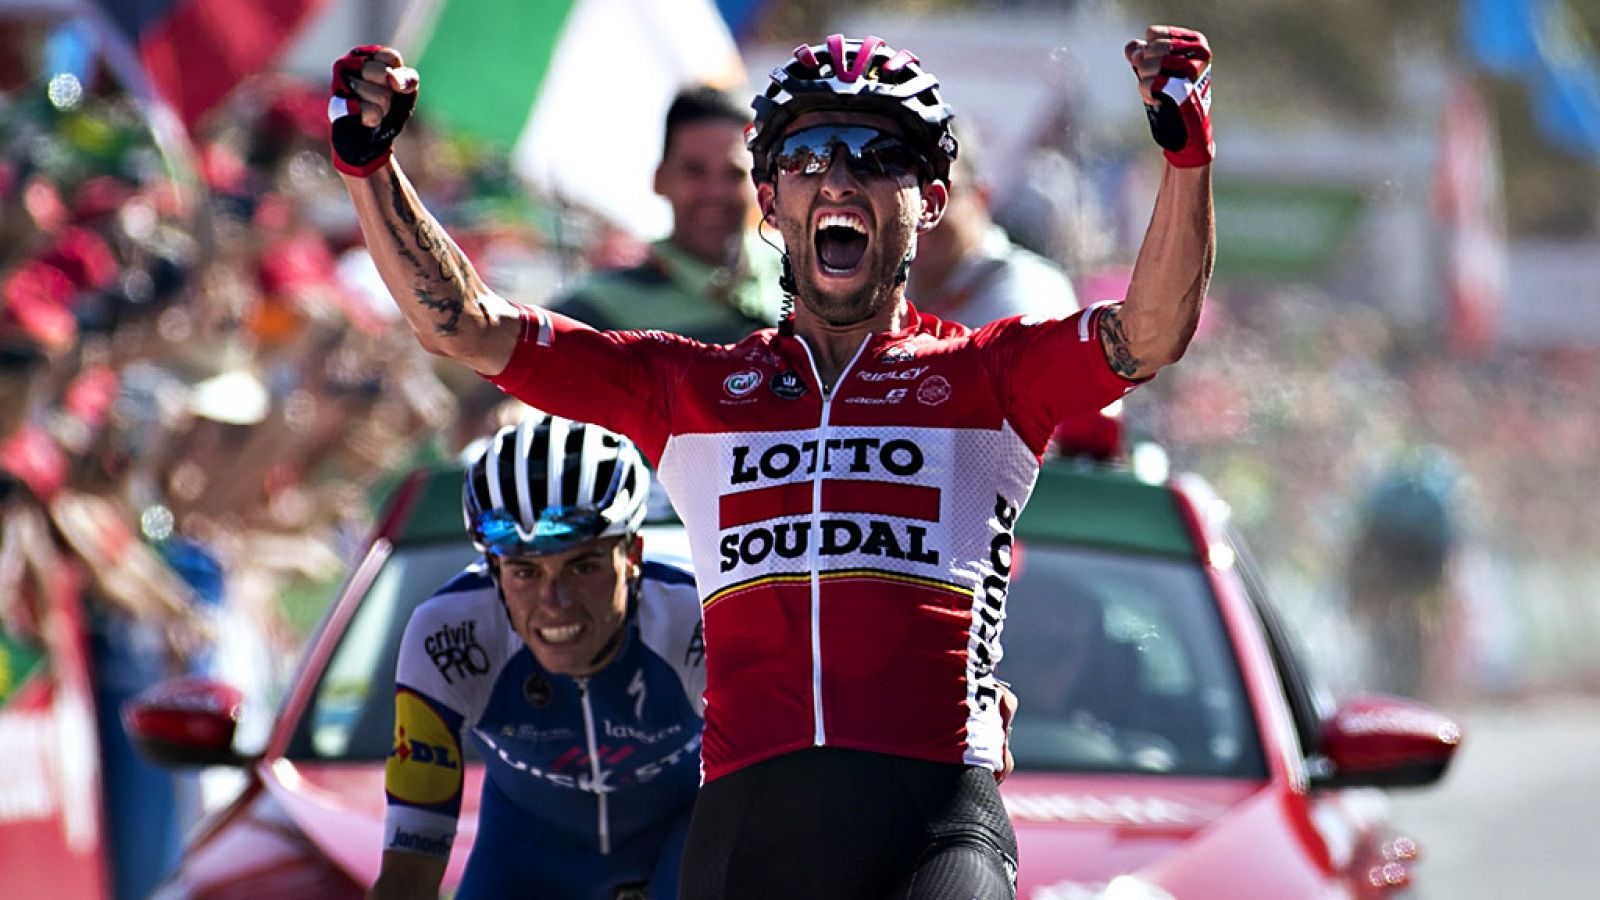 El polaco Tomasz Marczynski (Lotto-Soudal) ha ganado la sexta etapa de la Vuelta a España que se ha disputado entre Villareal y Sagunto, de 2014,4 kilómetros, en la que el británico Chris Froome mantuvo el maillot rojo de líder.